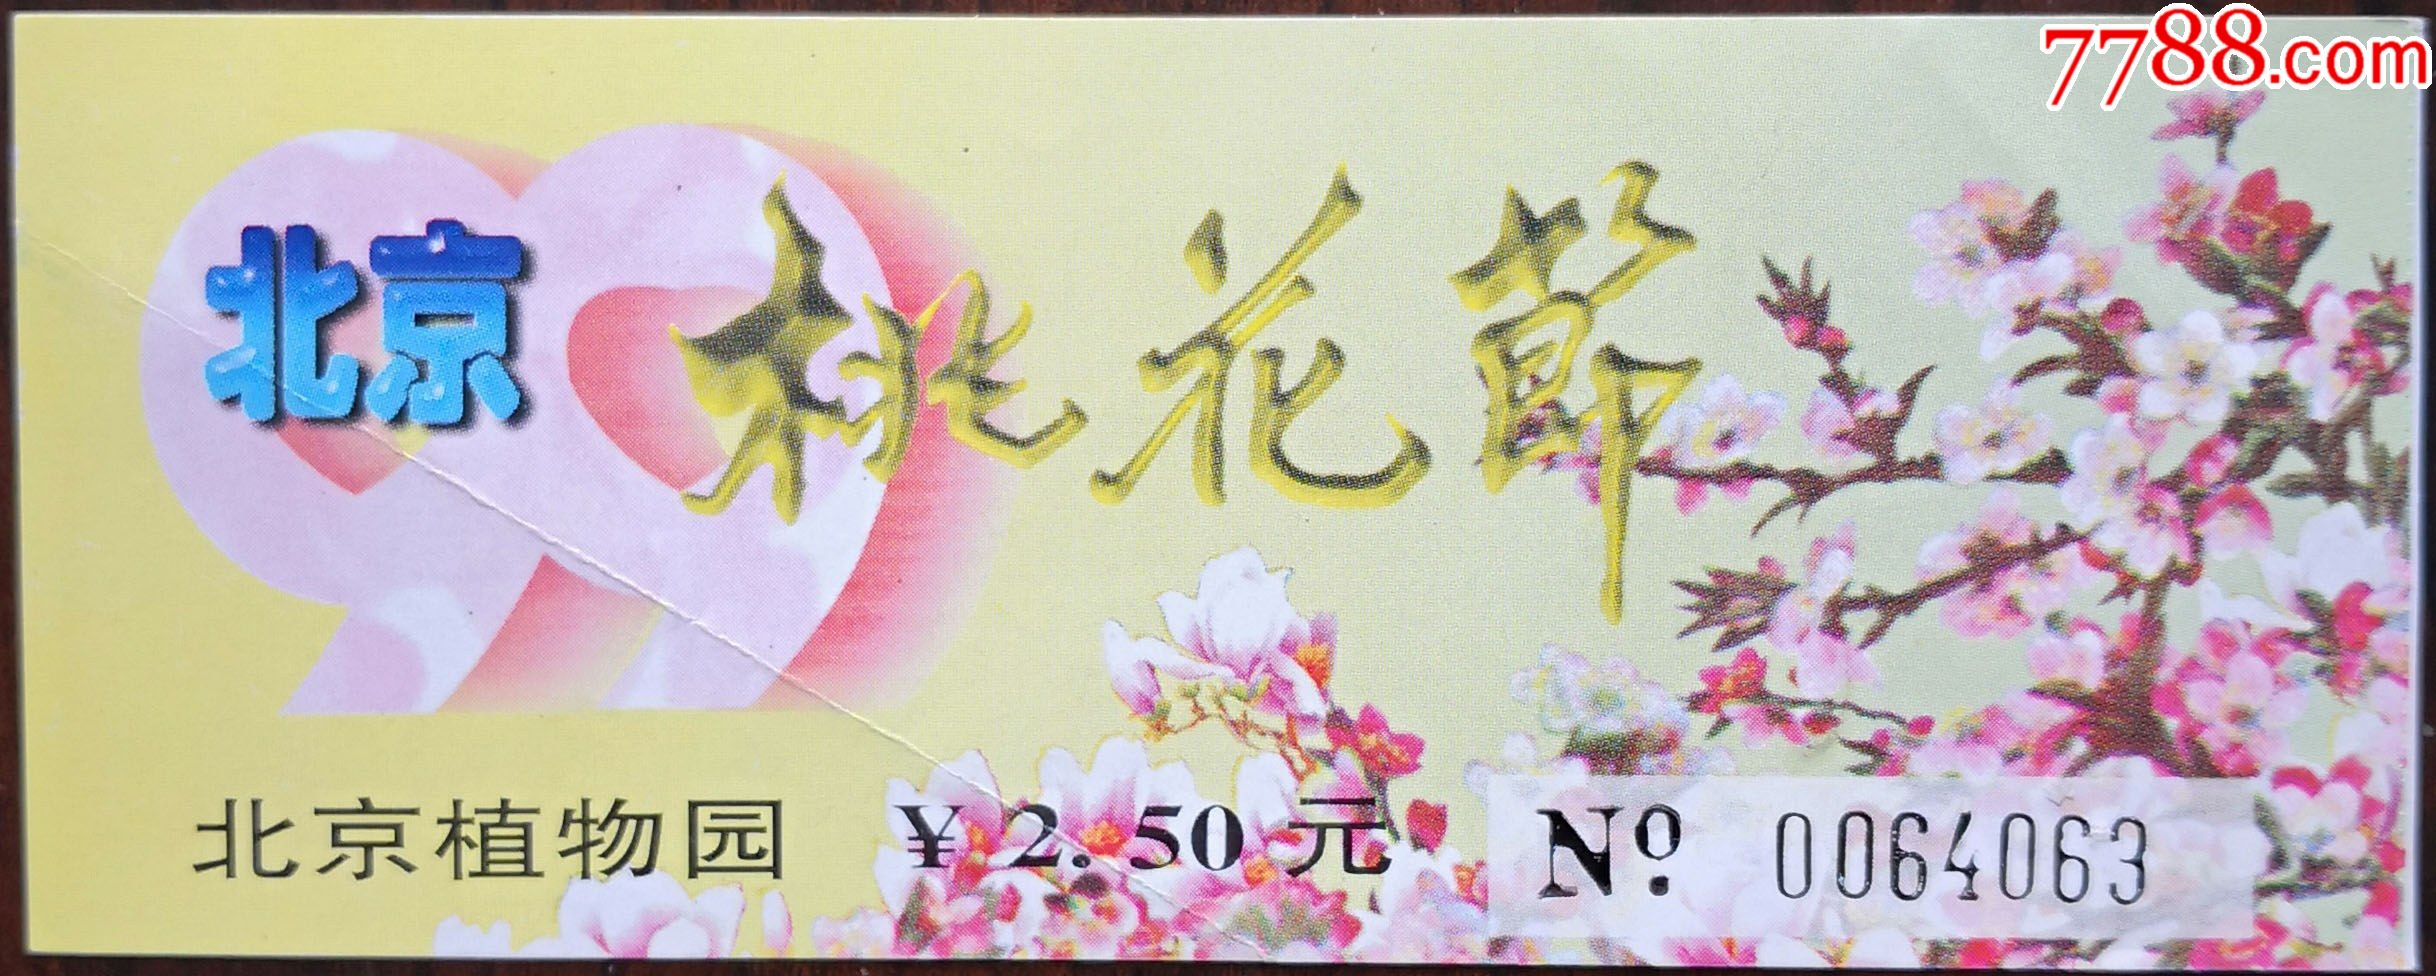 北京植物园桃花节时间图片